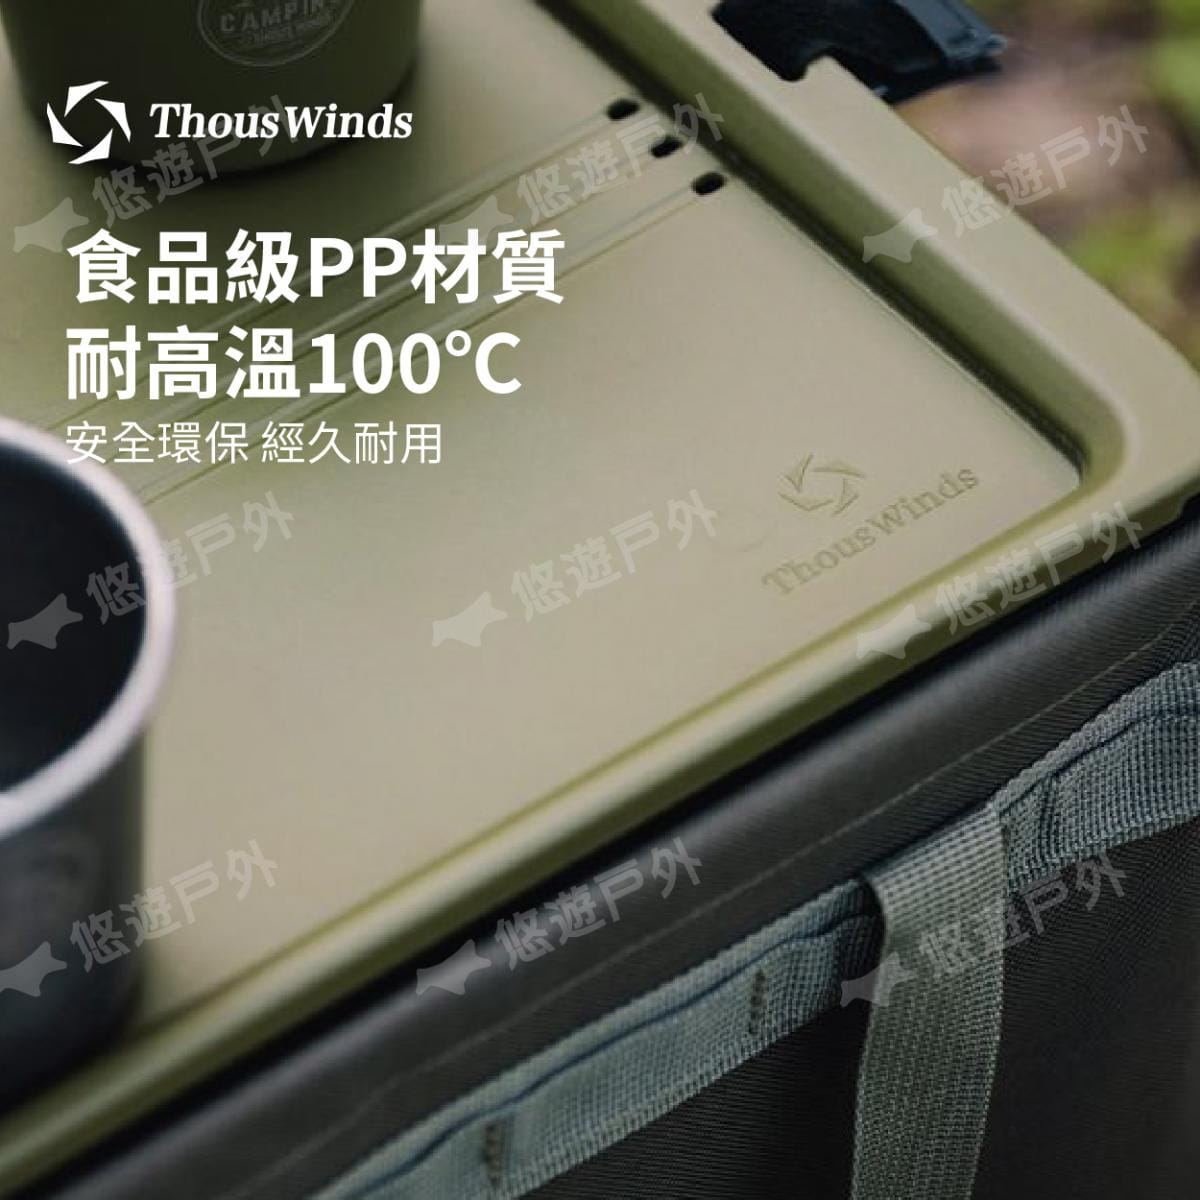 【Thous Winds】 一單元收納茶盒 三色 TW-IGT09B/G/K 悠遊戶外 6